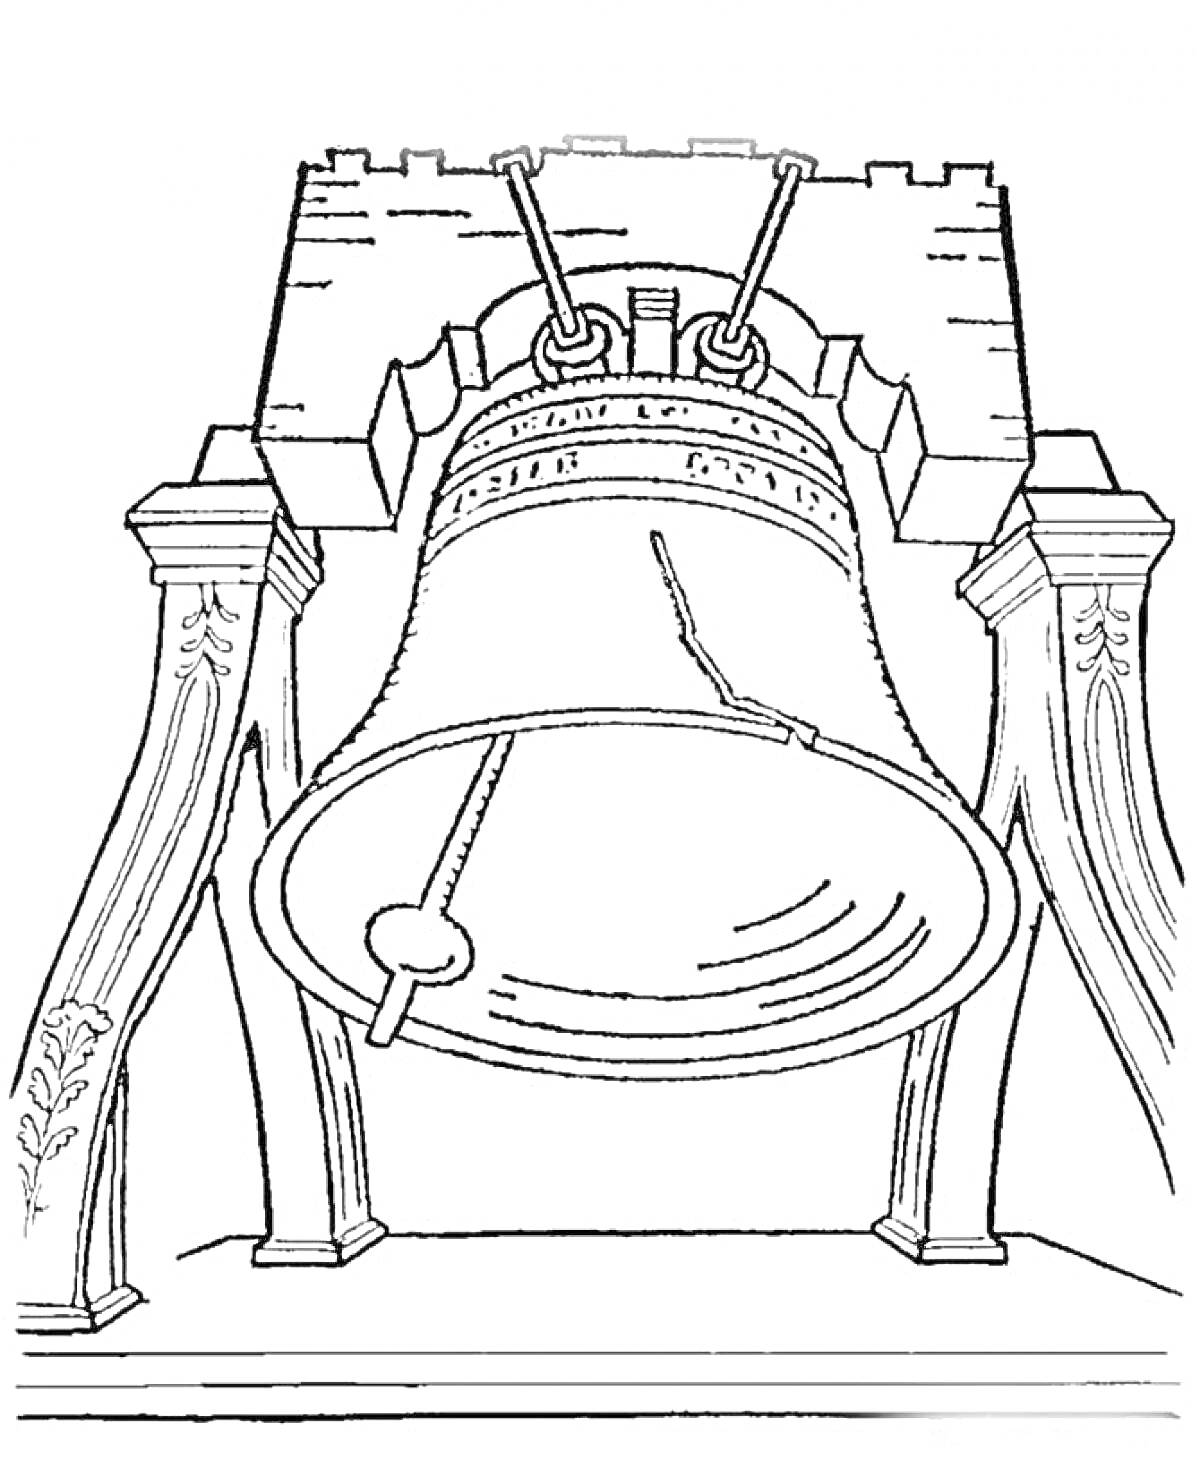 Колокол в подставке с декоративными элементами и укрепленным каркасом